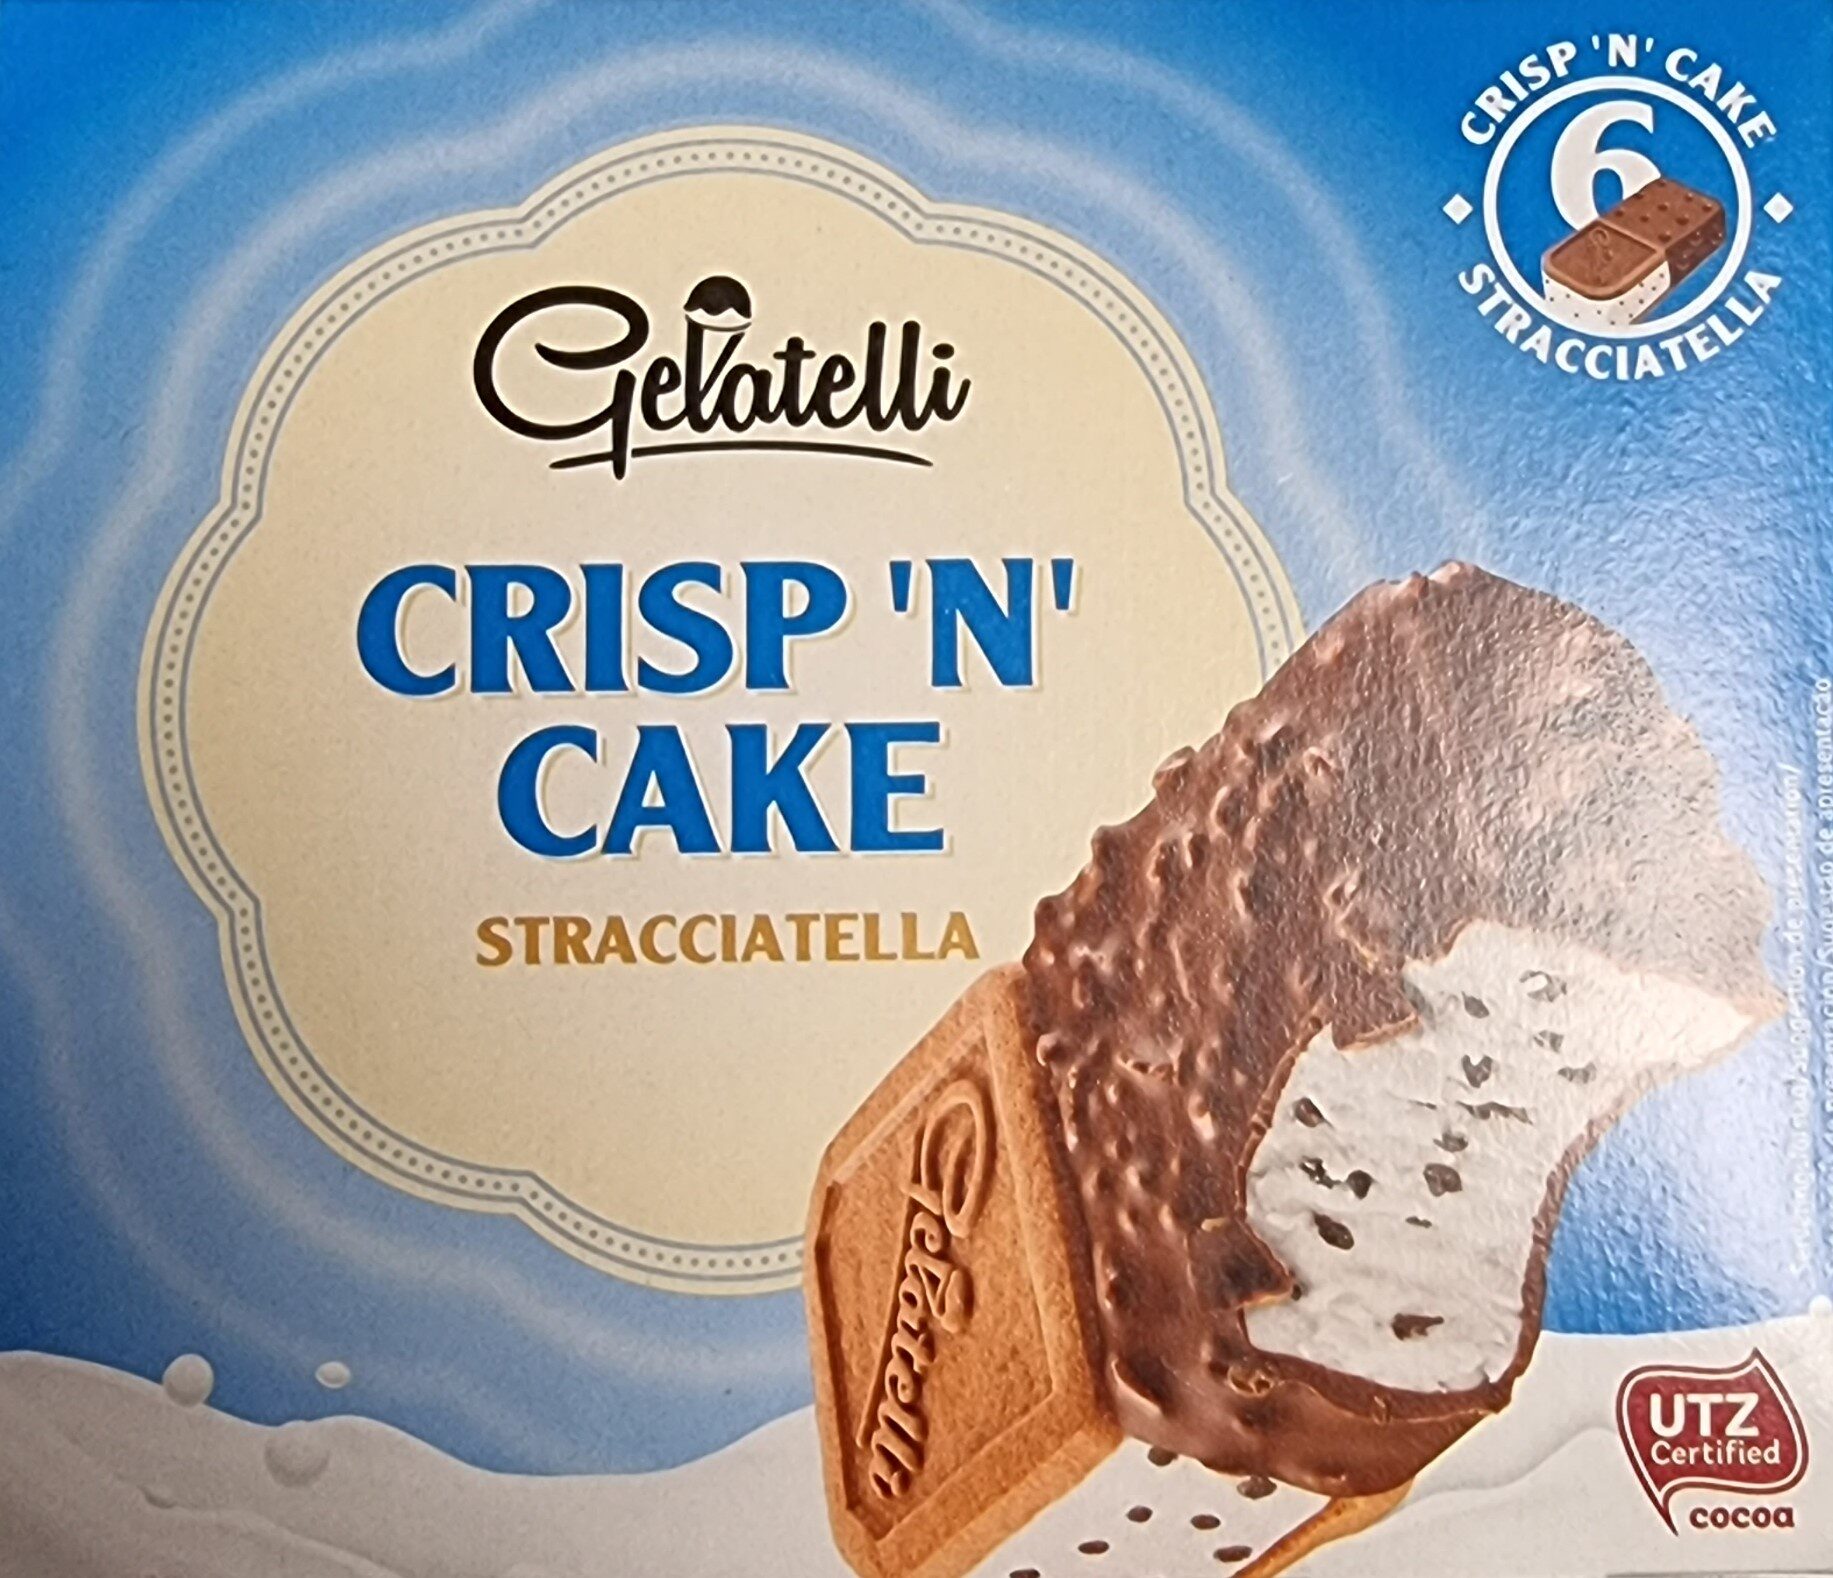 Crisp 'n' Cake Stracciatella - Product - pt